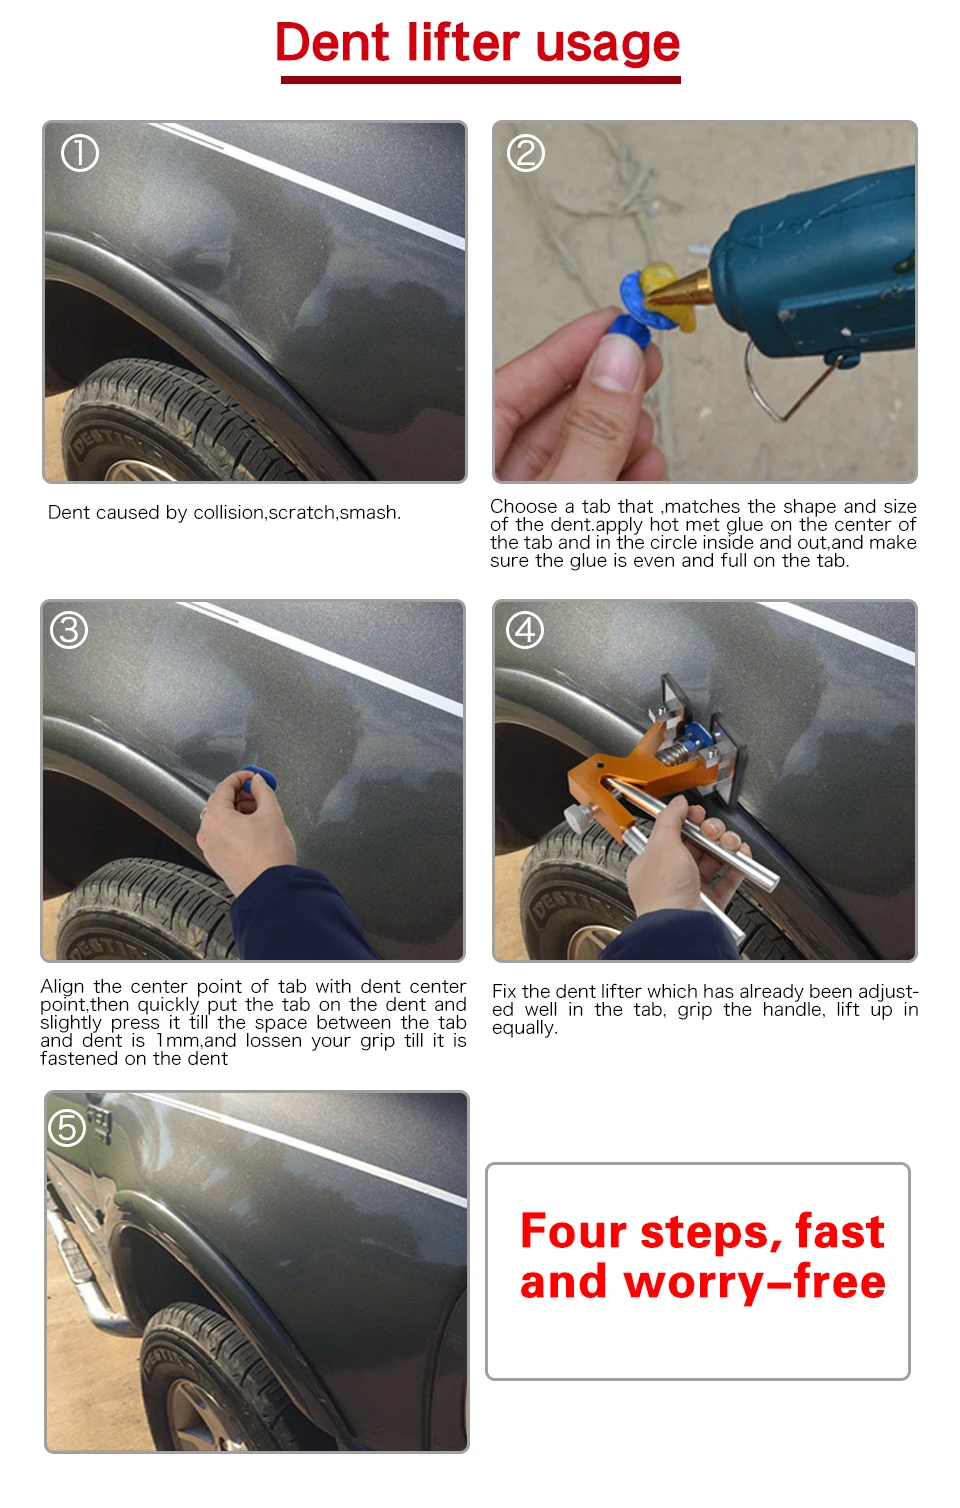 PDR Инструменты для ремонта вмятин набор инструментов Съемник подъемник клеевые вкладки Инструменты для ремонта кузова инструменты для удаления вмятин Инструменты для ремонта автомобиля